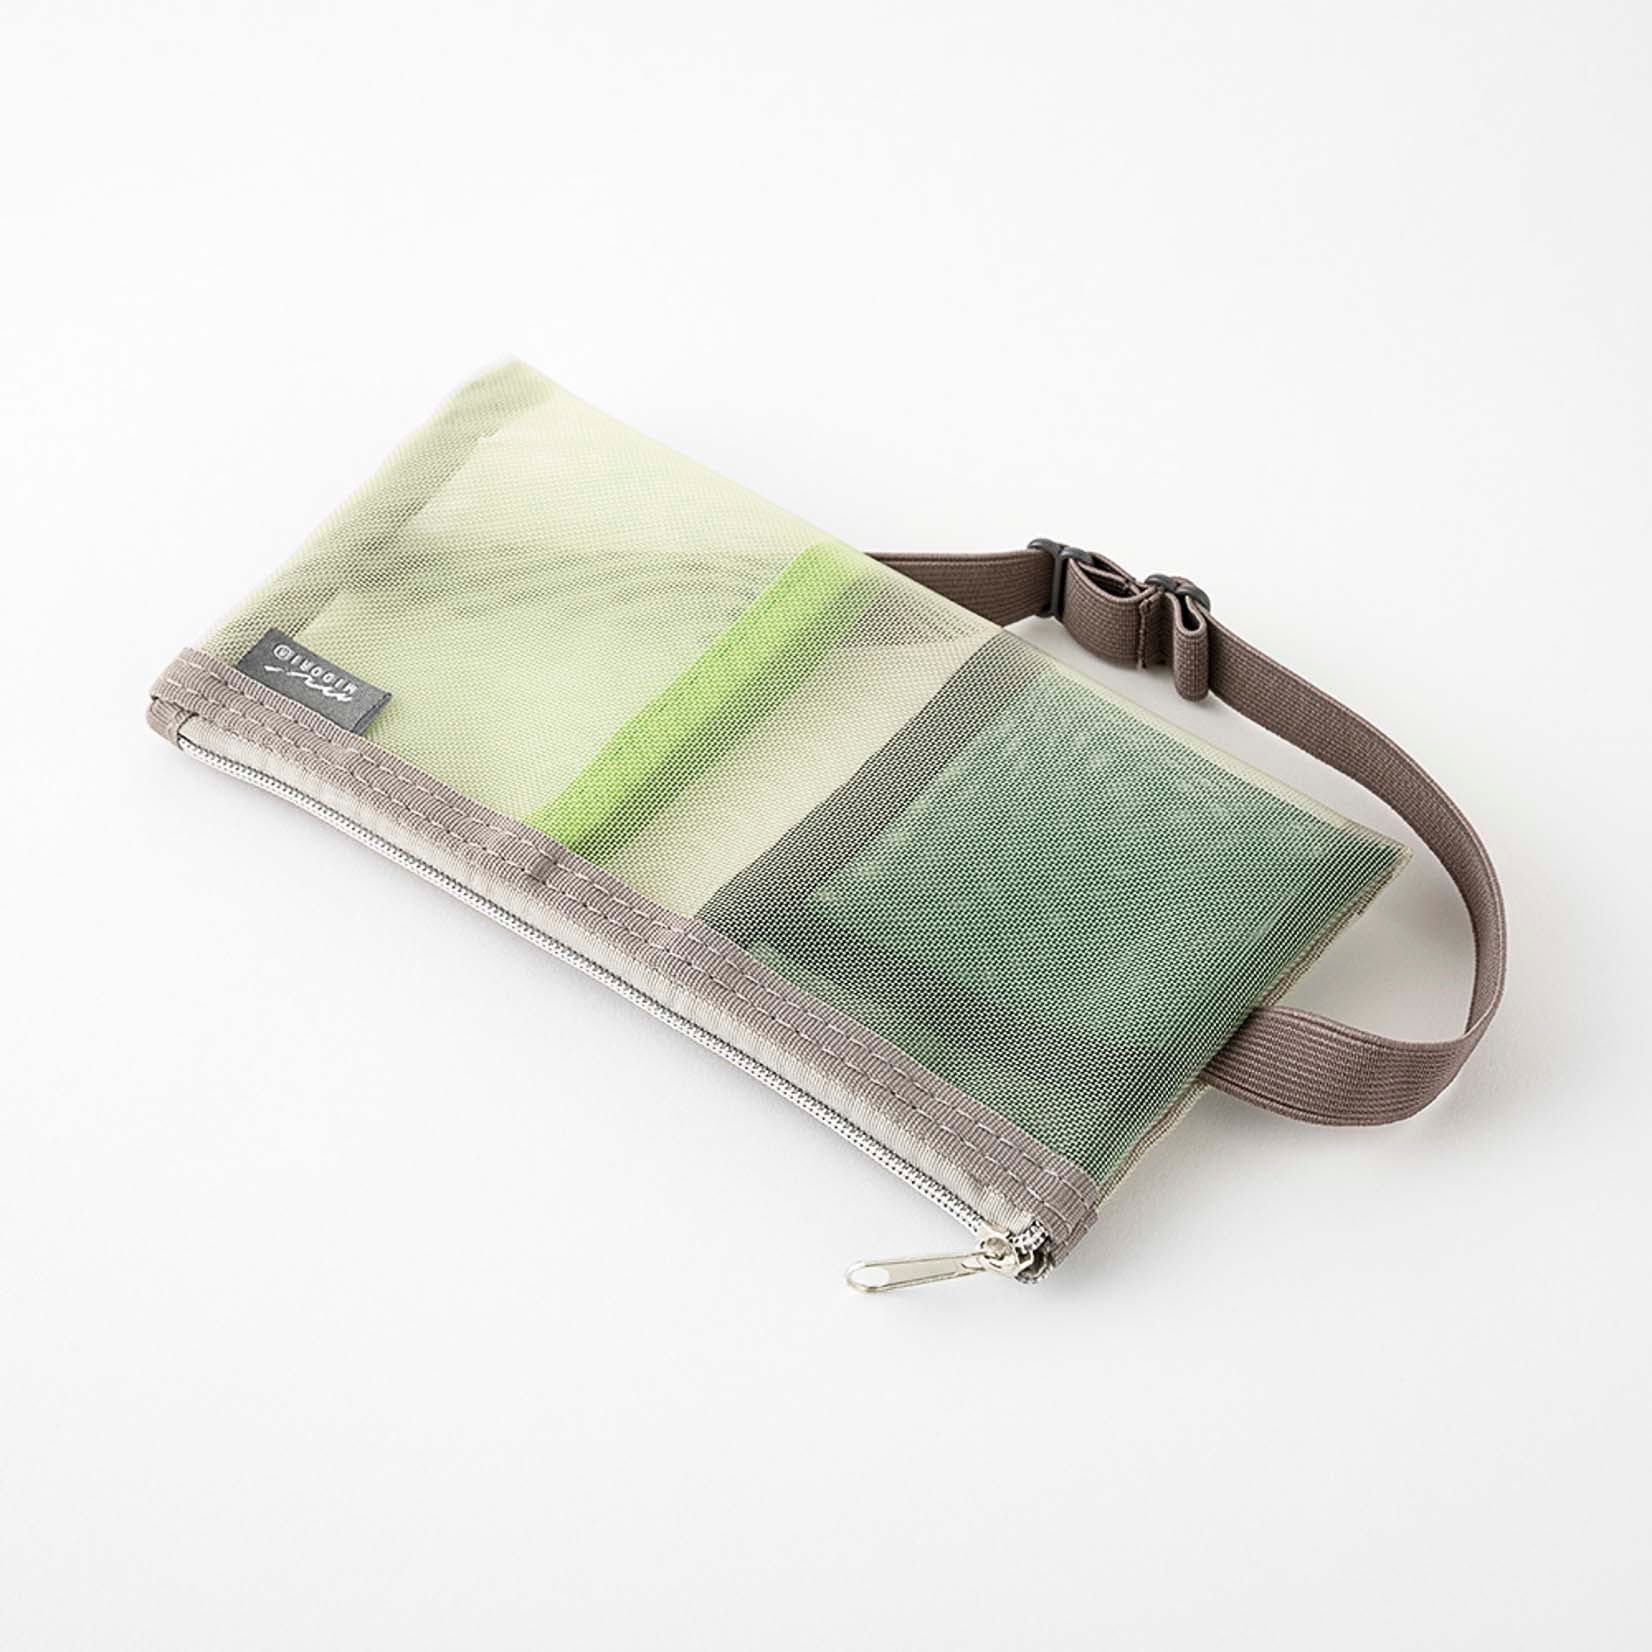 Kleine Tasche aus durchsichtigem Netzgewebe für Stifte und Kleinteile mit Gummiband zur Befestigung an einem Notizbuch oder Kalender